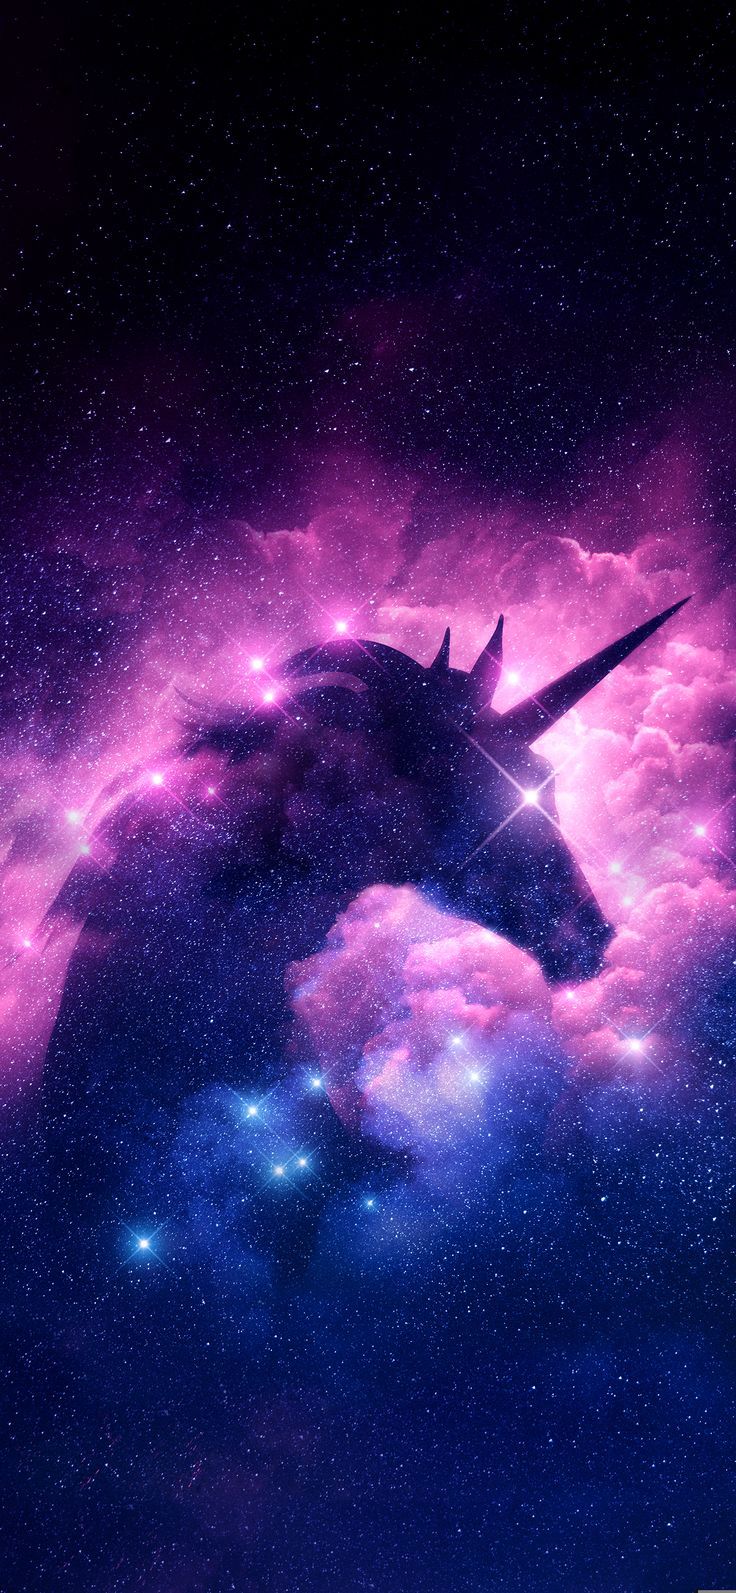 Hãy khám phá thế giới kỳ diệu của Unicorn Galaxy, nơi mà màu sắc và ánh sáng huyền ảo mang đến niềm vui và sự lạc quan cho mọi người. Hãy nhấn vào hình ảnh để trải nghiệm cảm giác thần tiên đó.